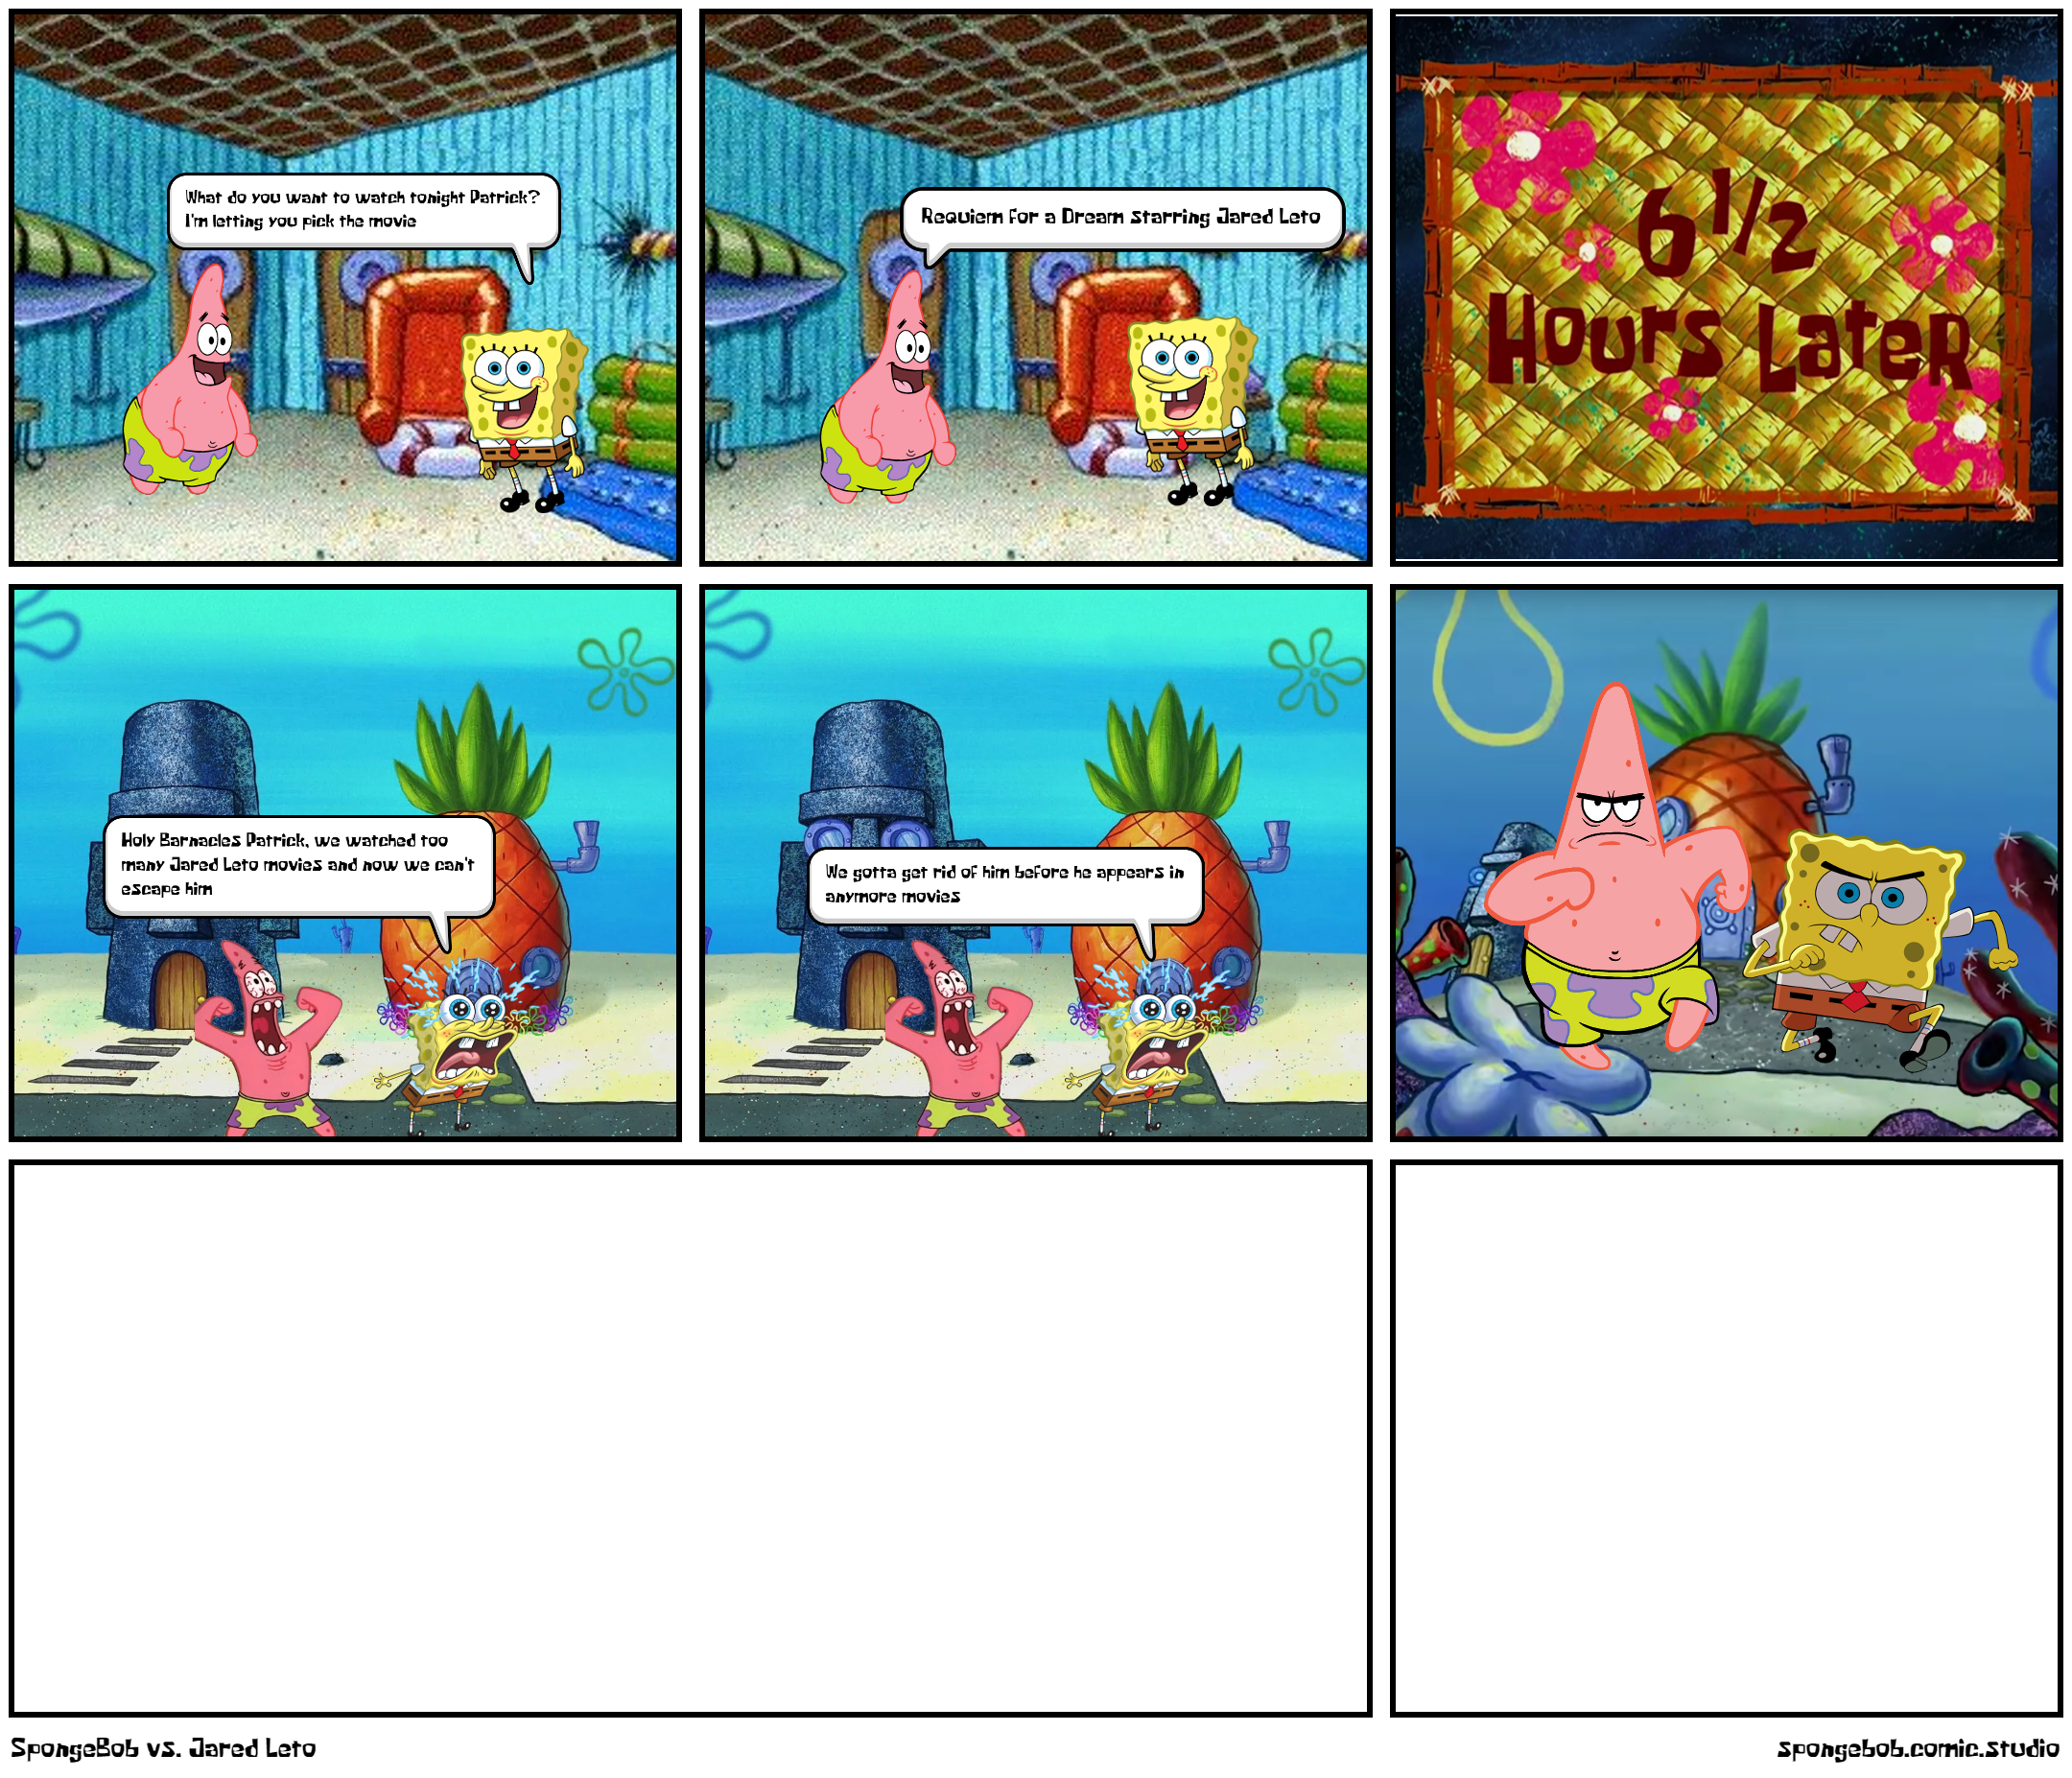 SpongeBob vs. Jared Leto